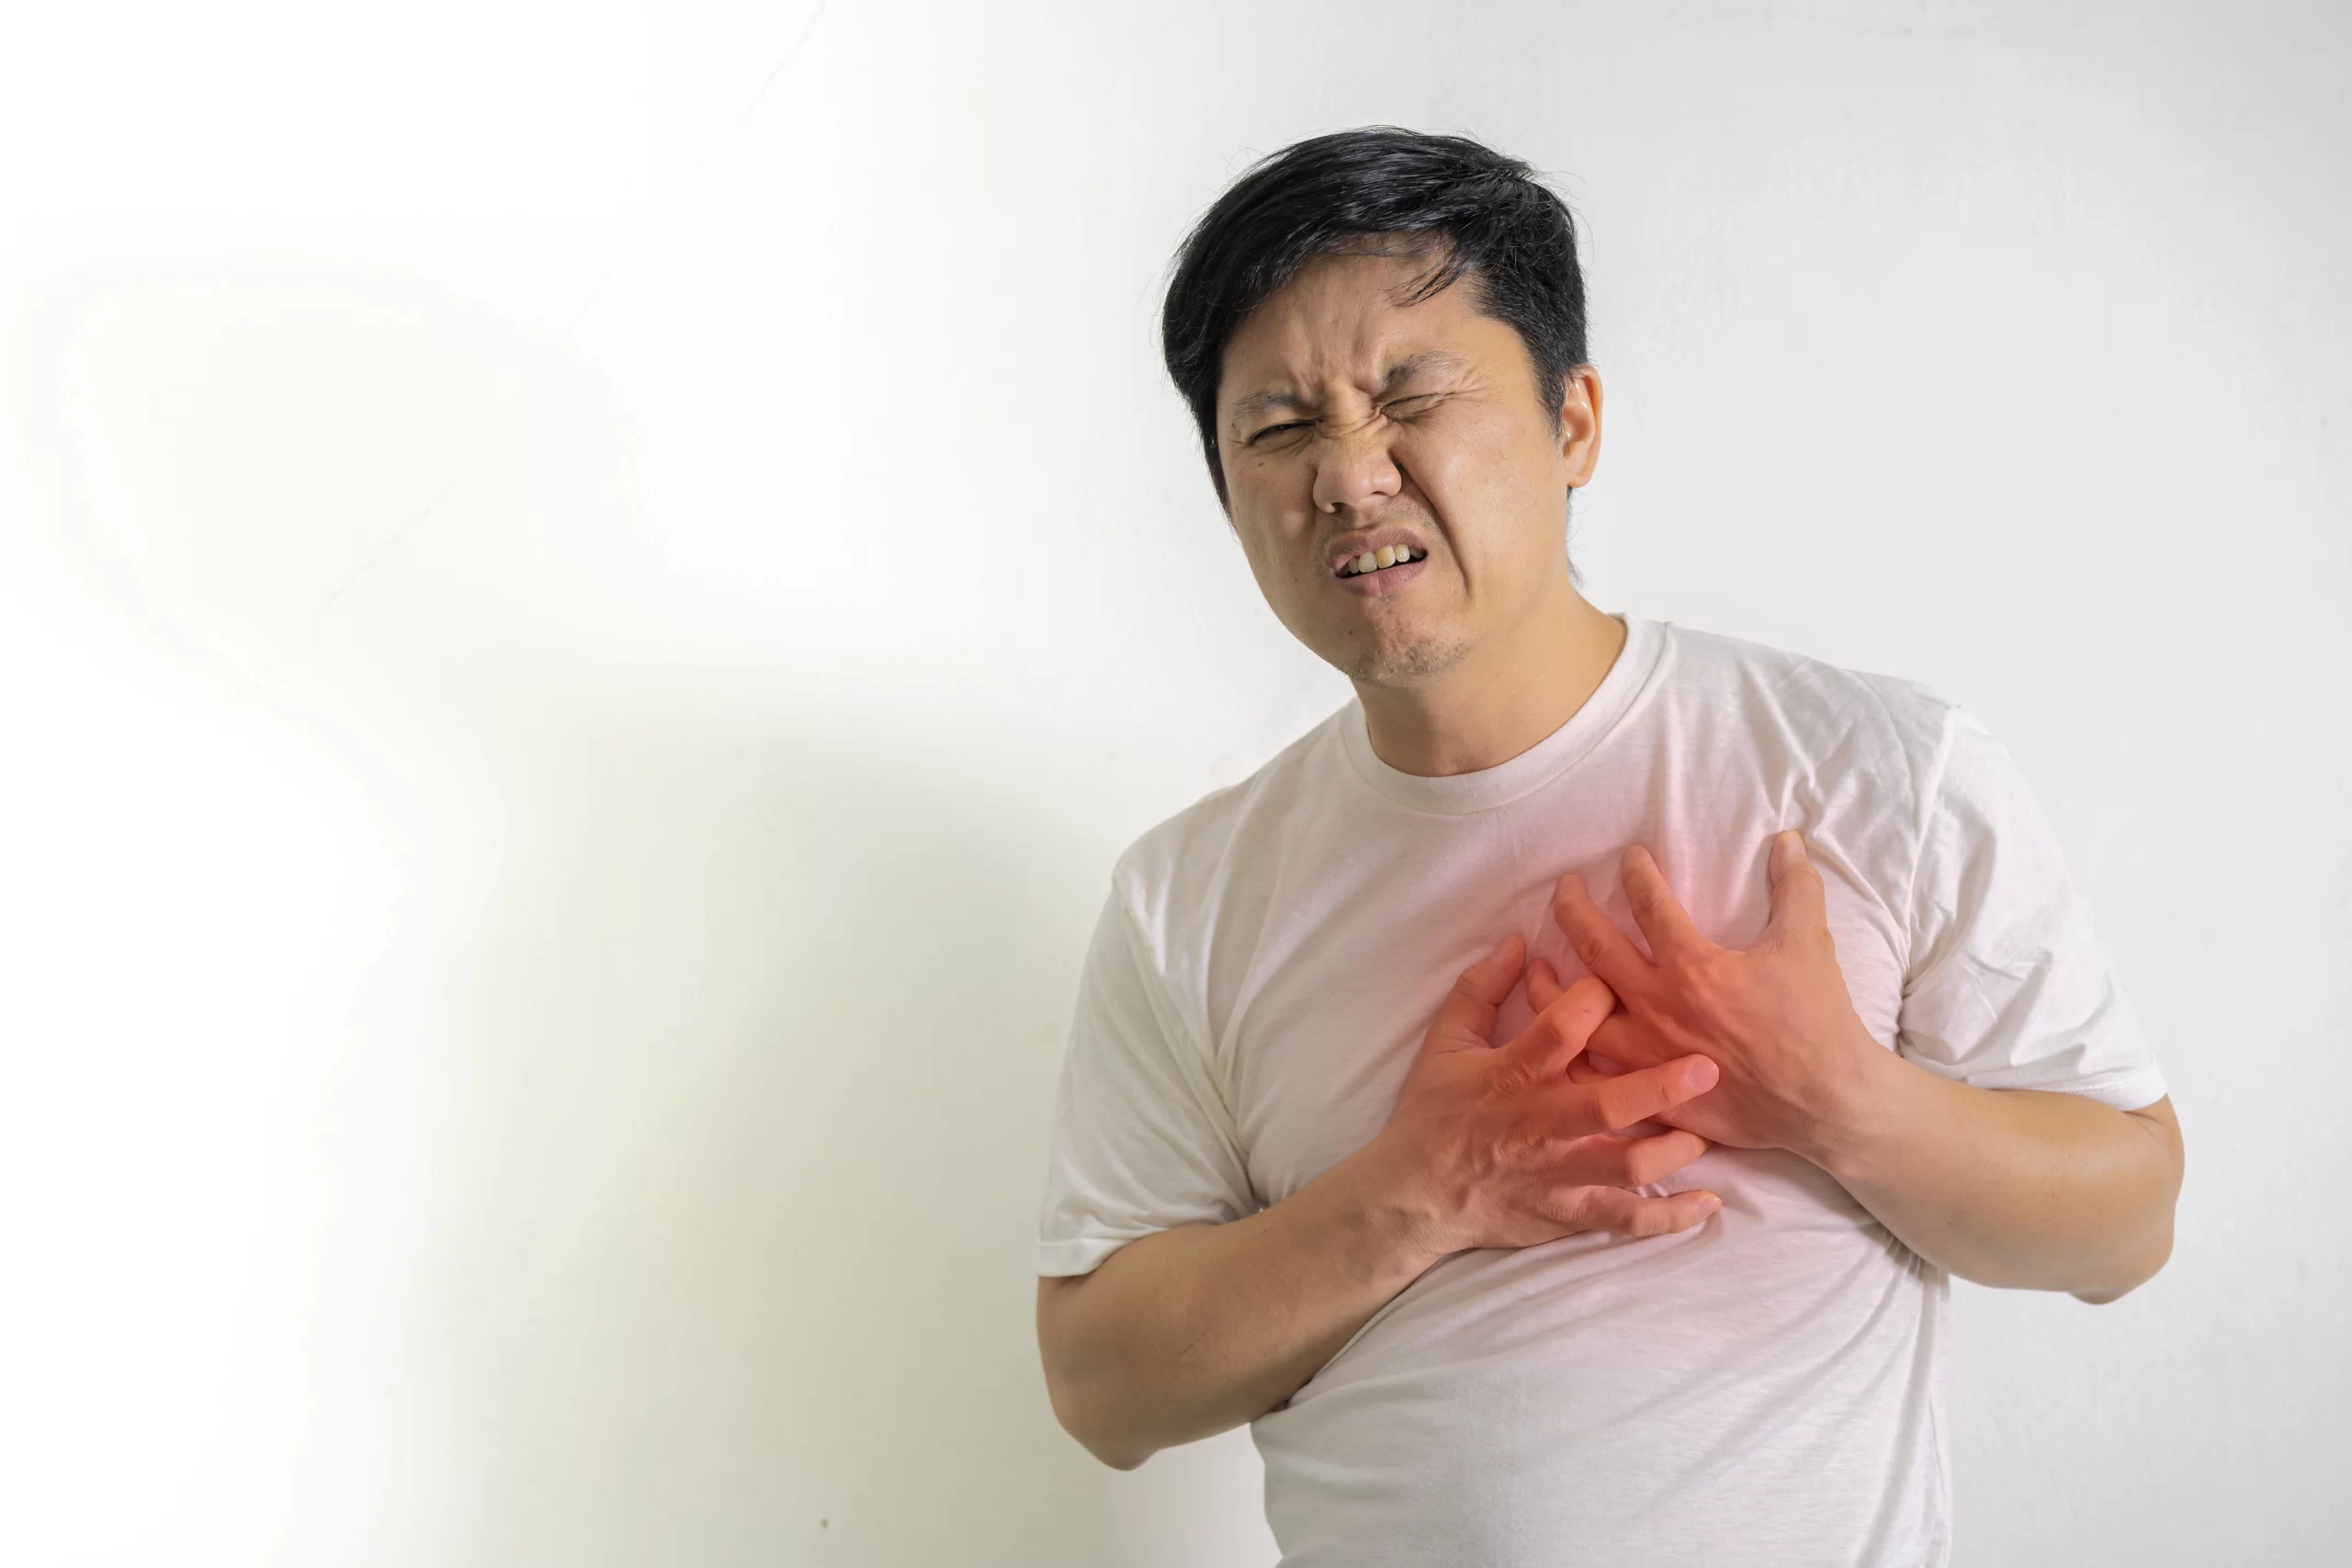 Pasien lemah jantung berjalan di treadmill saat tes stres kardiologi, dengan monitor jantung terhubung untuk mencatat data kesehatannya